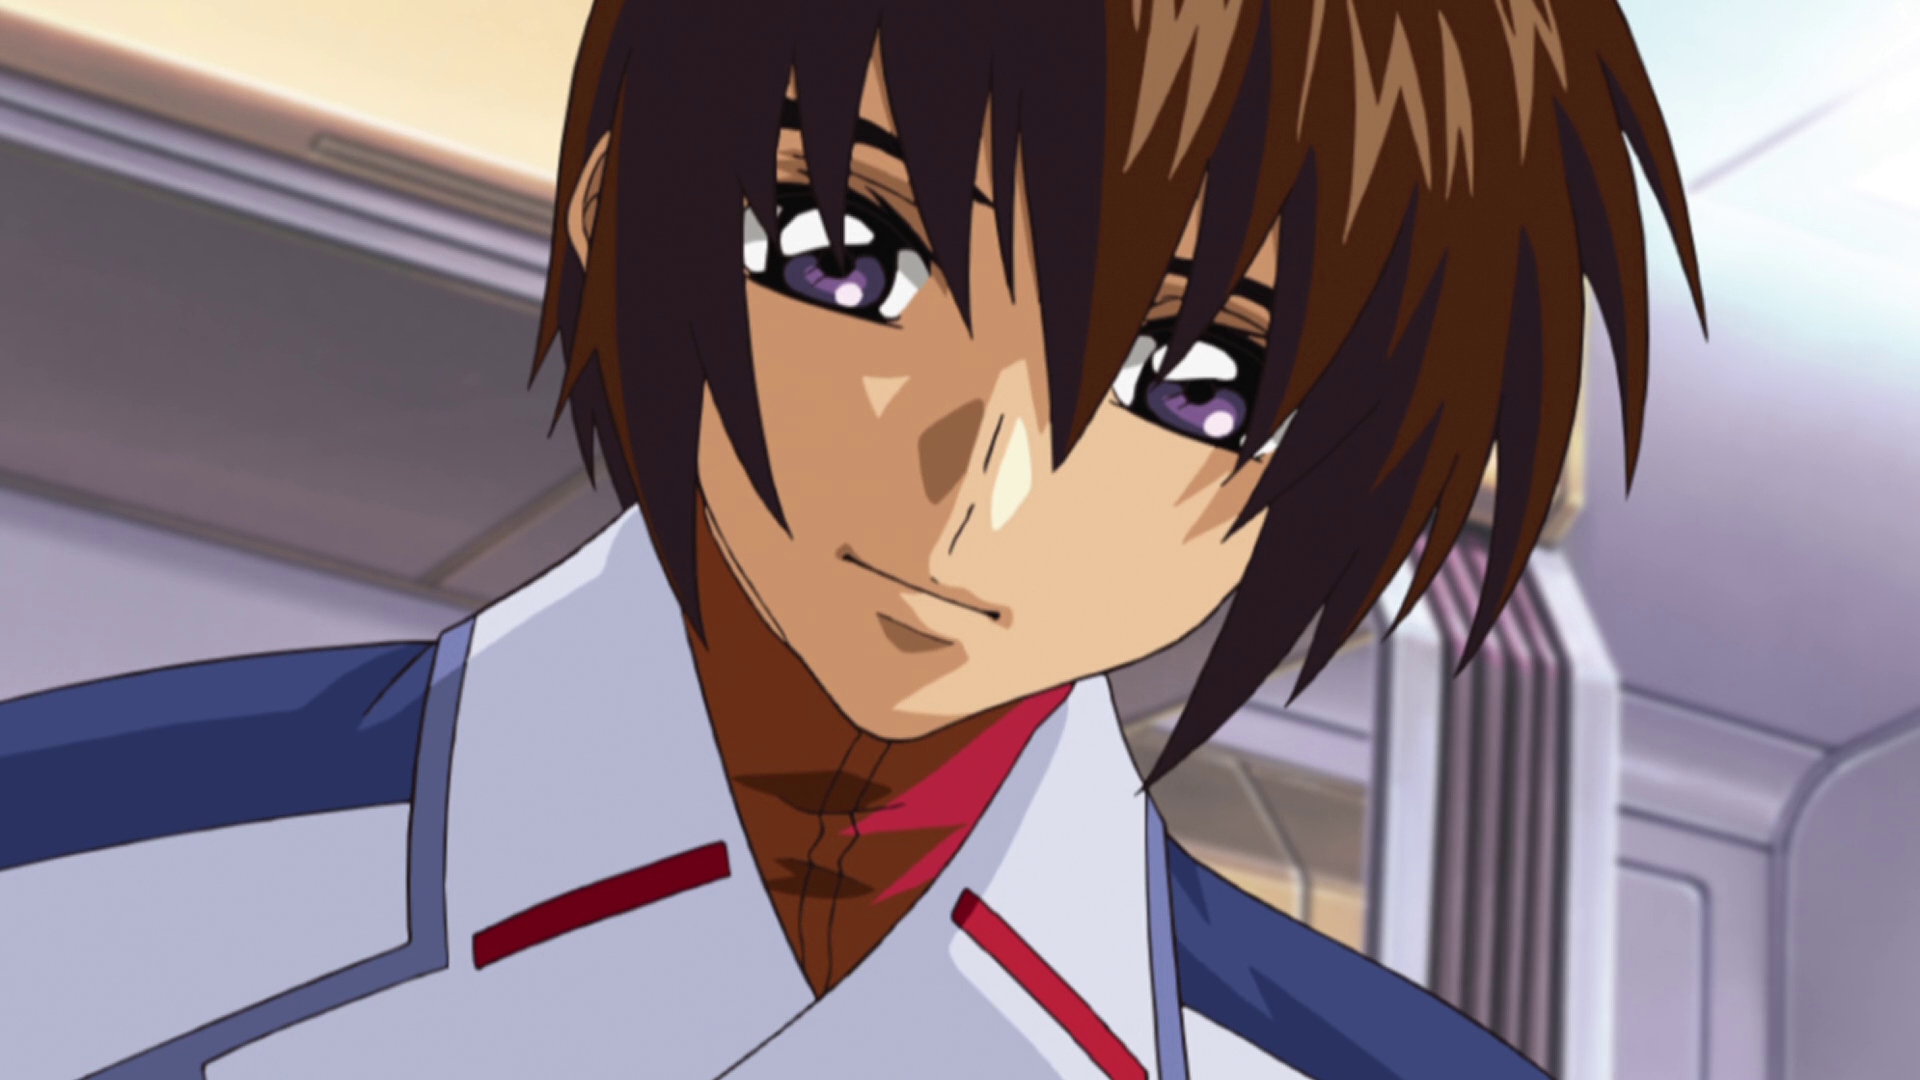 Kira Yamato The Gundam Wiki Fandom